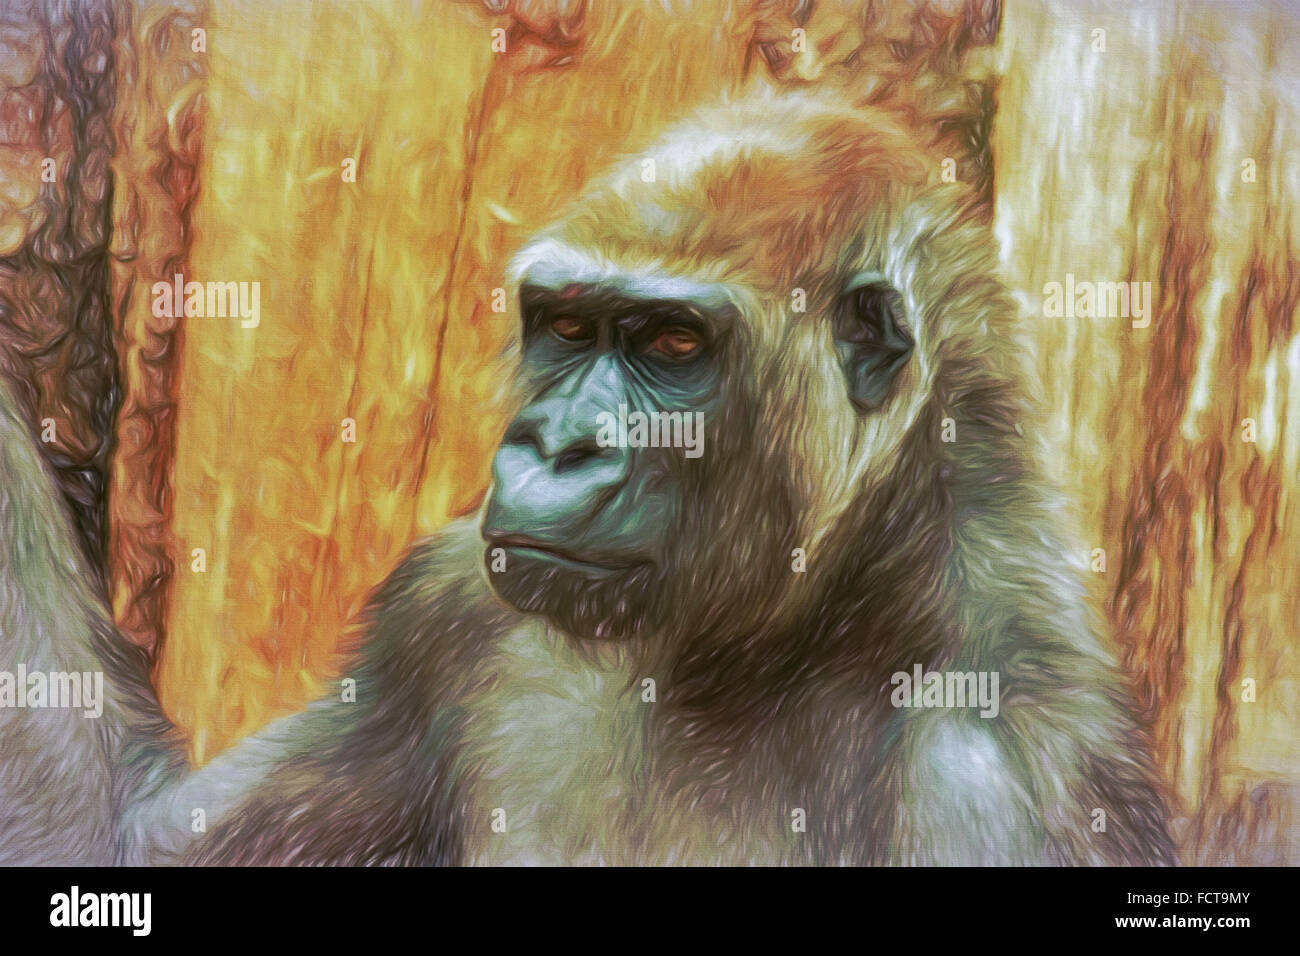 Porträt von Gorilla Mail, Malen im impressionistischen Stil. Manuell mit verschiedenen digitalen Techniken erstellt. Stockfoto